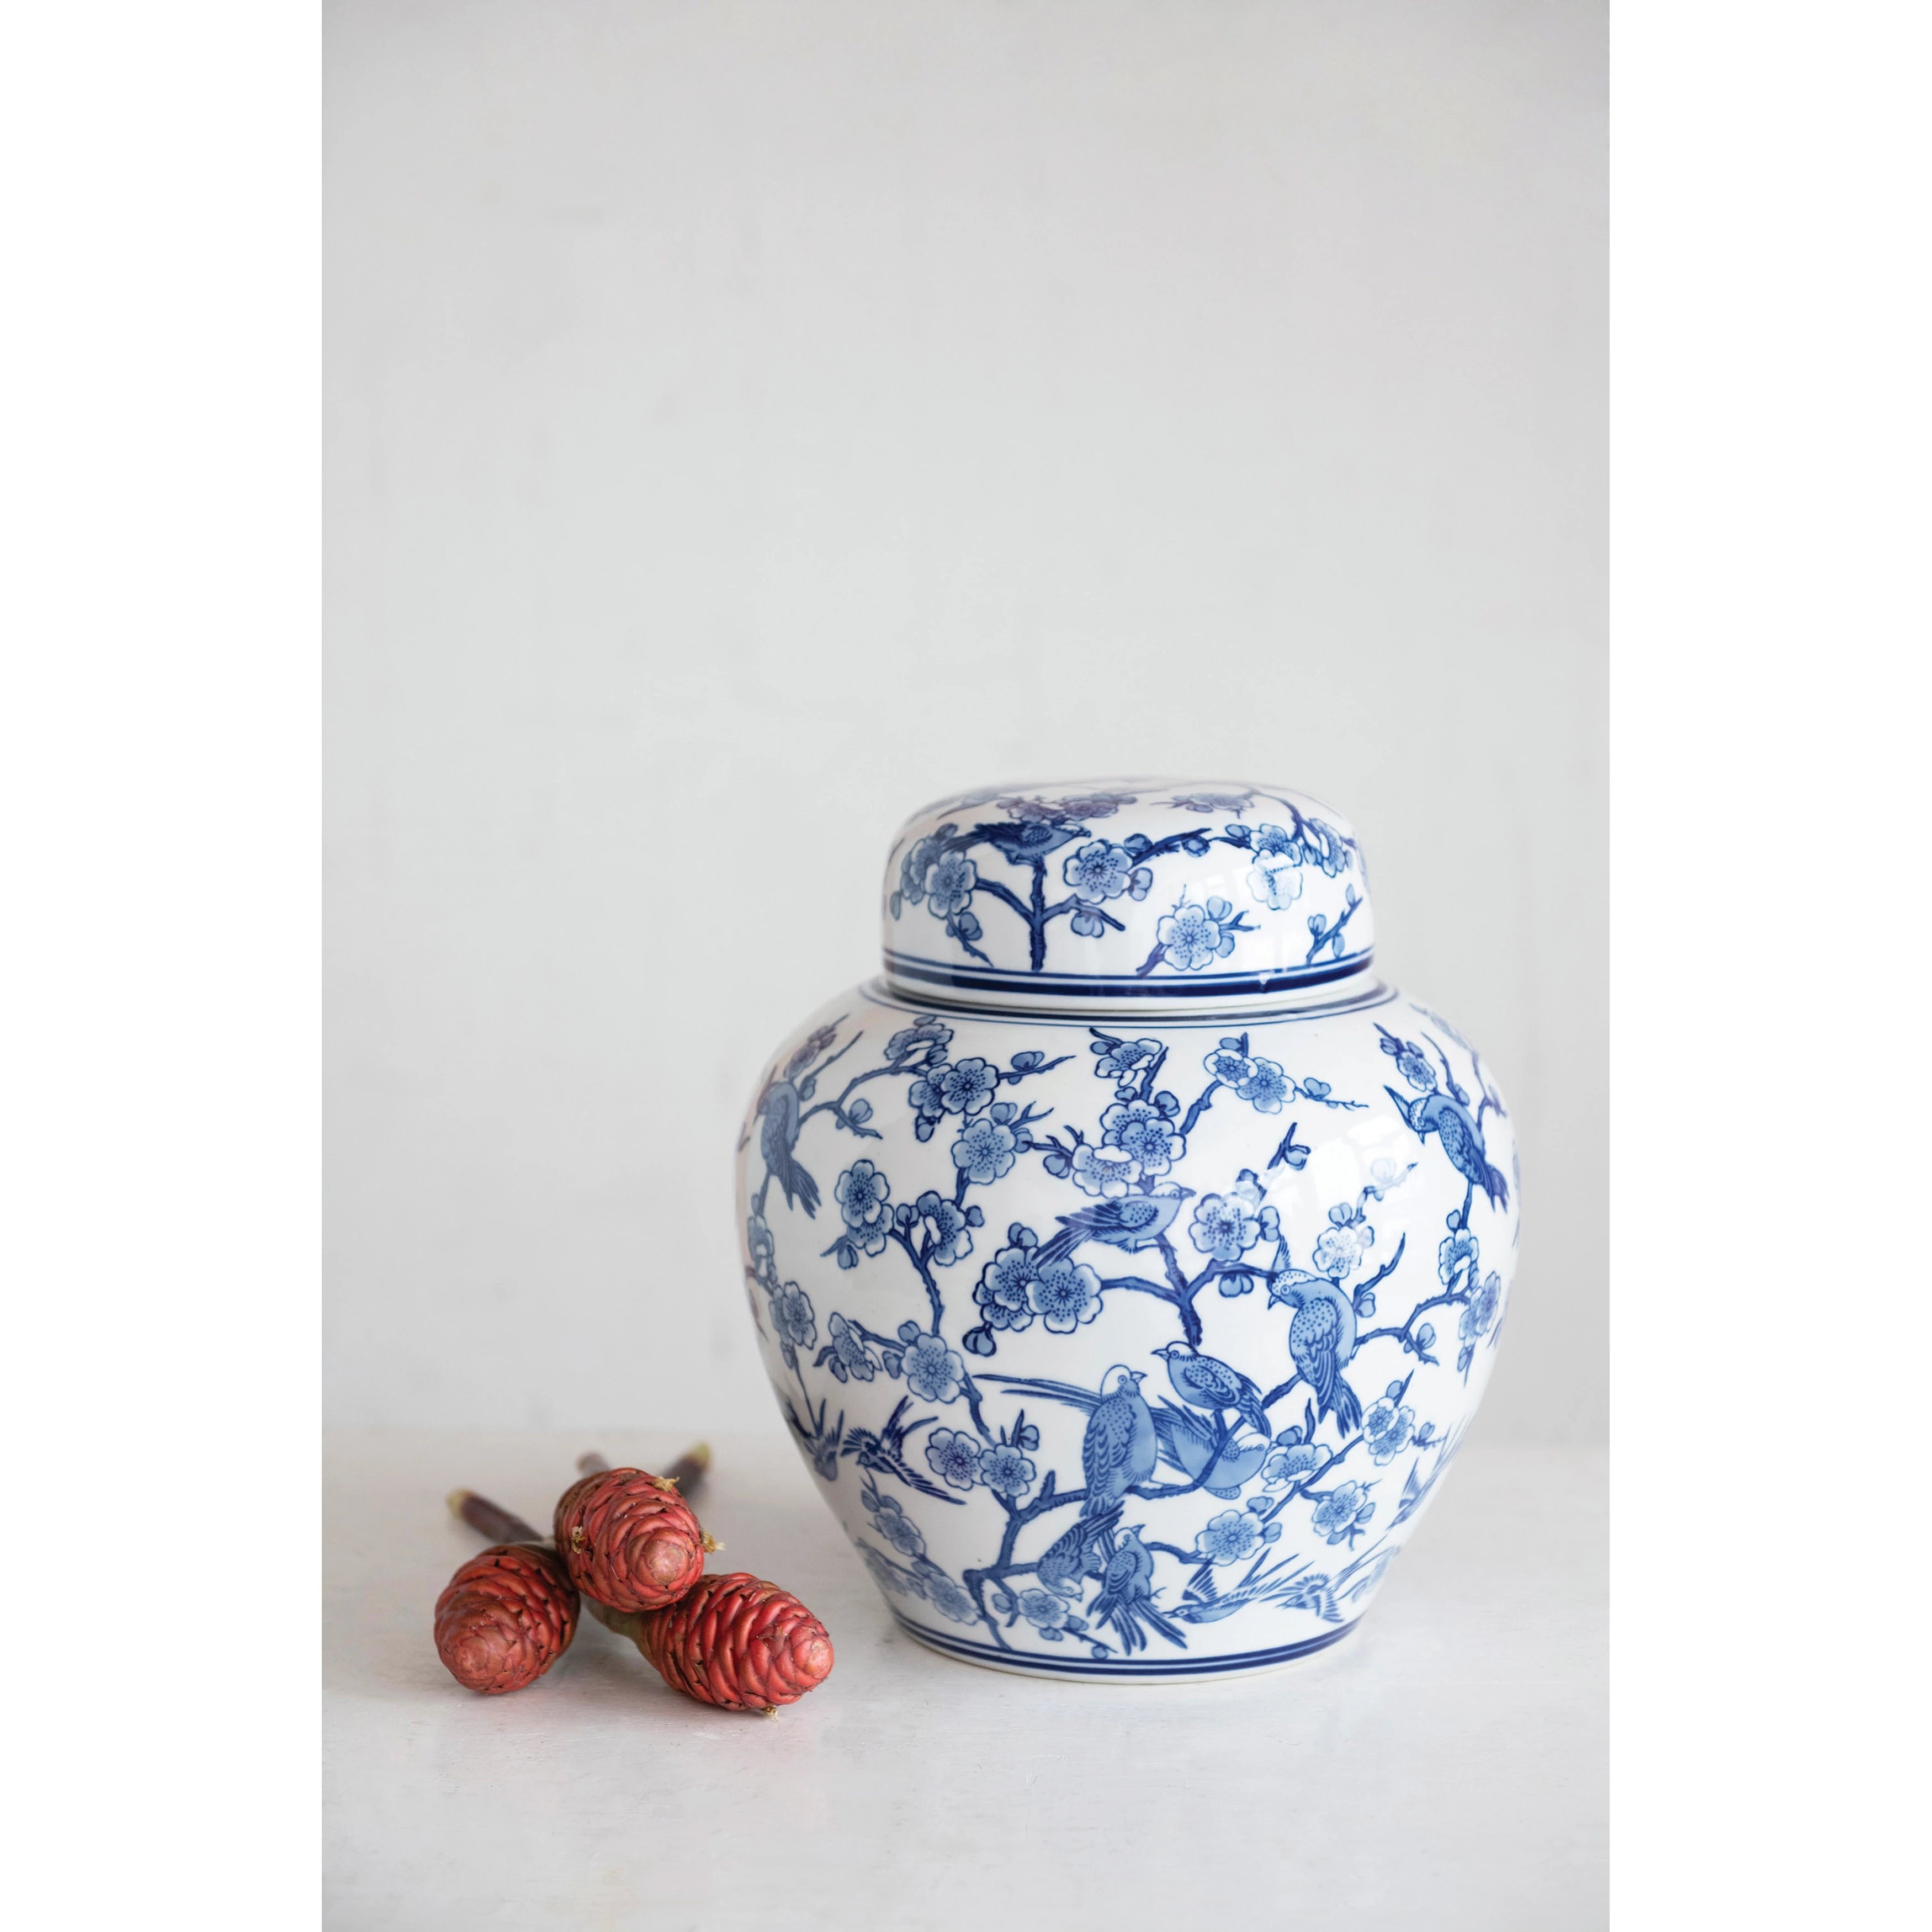 NO LONGER AVAILABLE Decorative Stoneware Ginger Jar - Image 1